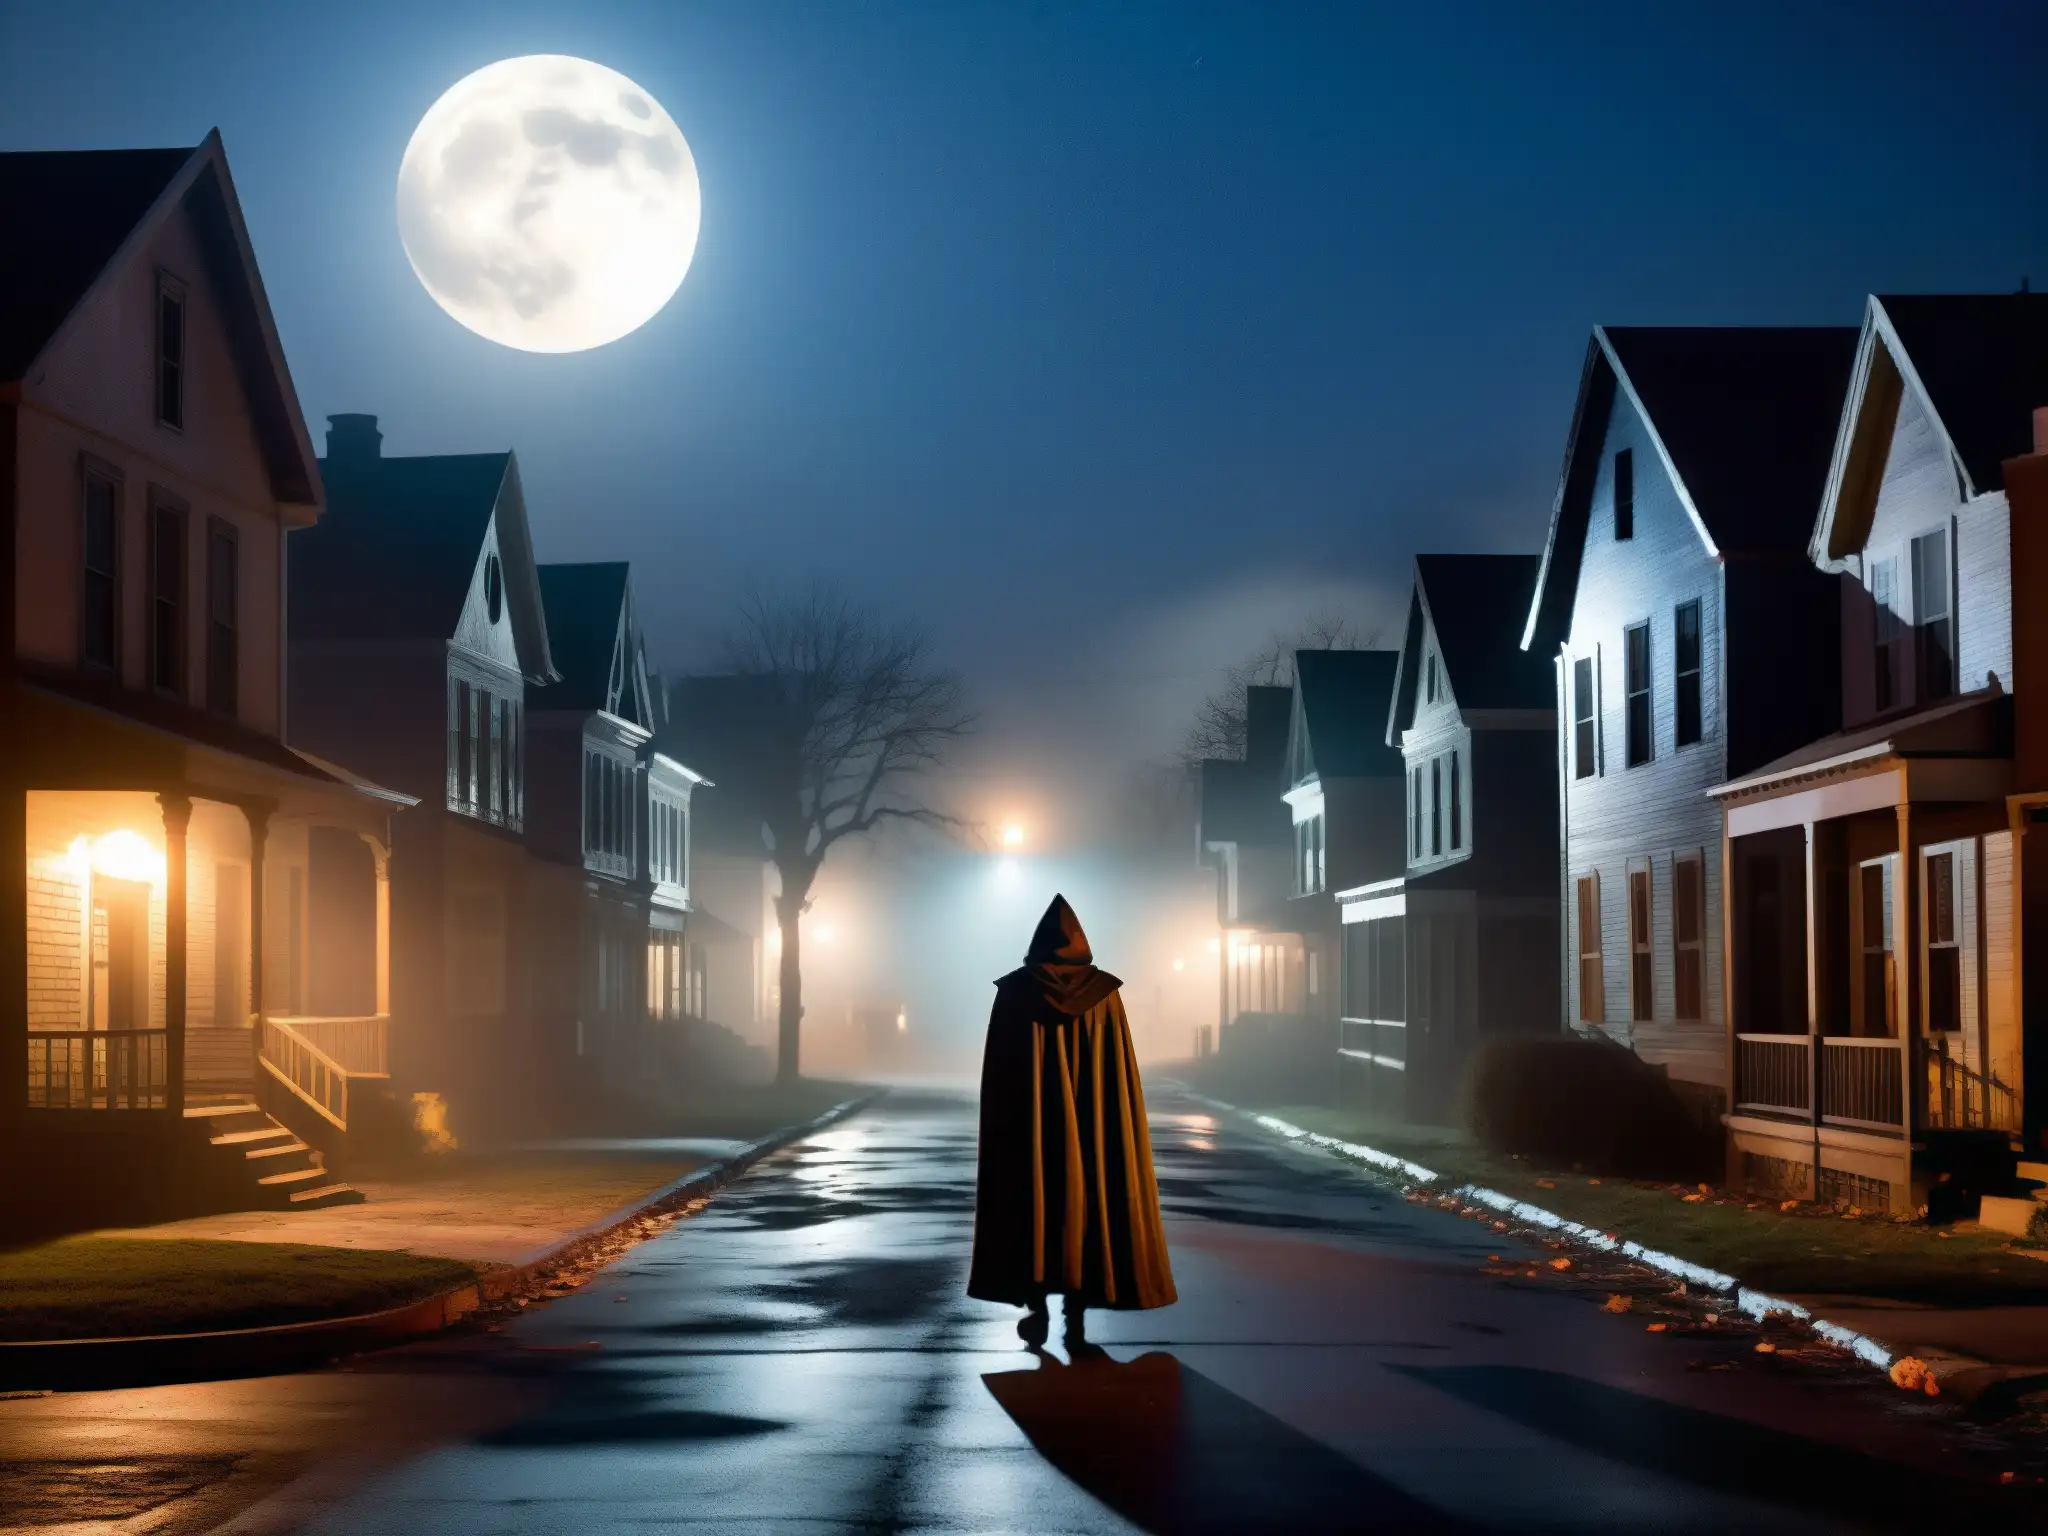 Un misterioso personaje enmascarado acecha una calle sombría en la noche de Halloween, evocando la psicología de leyendas urbanas